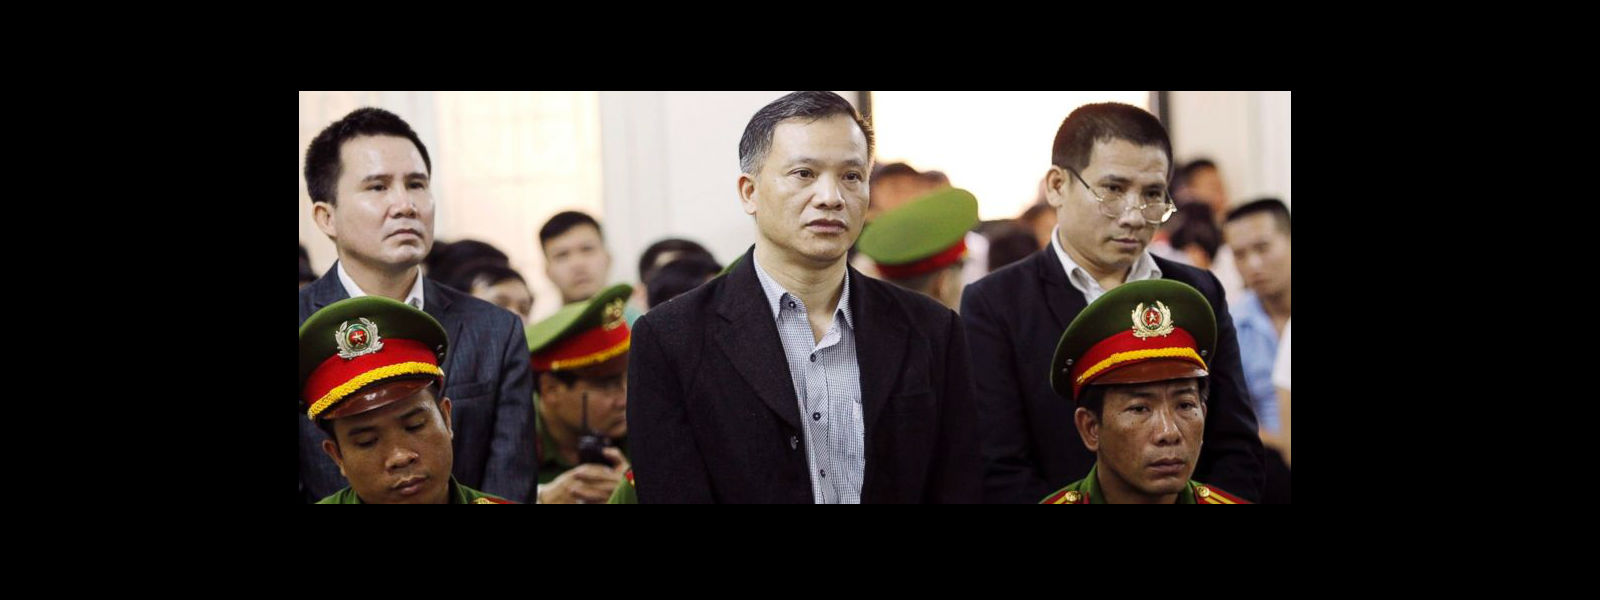 HR activists jailed in Vietnam